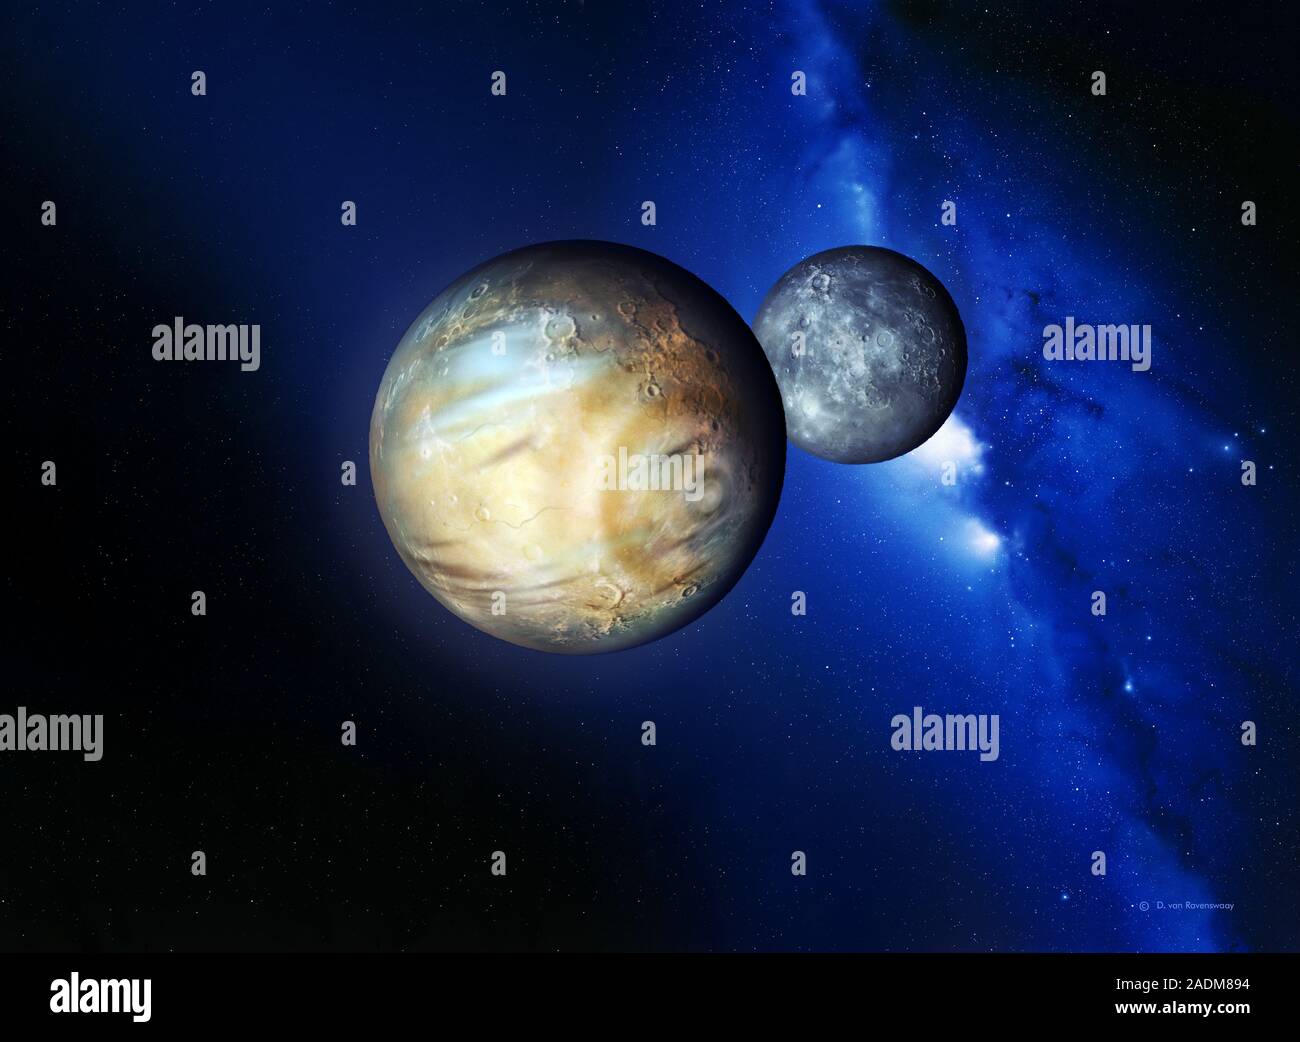 М н планета. Плутон и Харон двойная Планета. Плутон (Планета). Харон Спутник Плутона. Харон (Спутник) планеты и спутники.